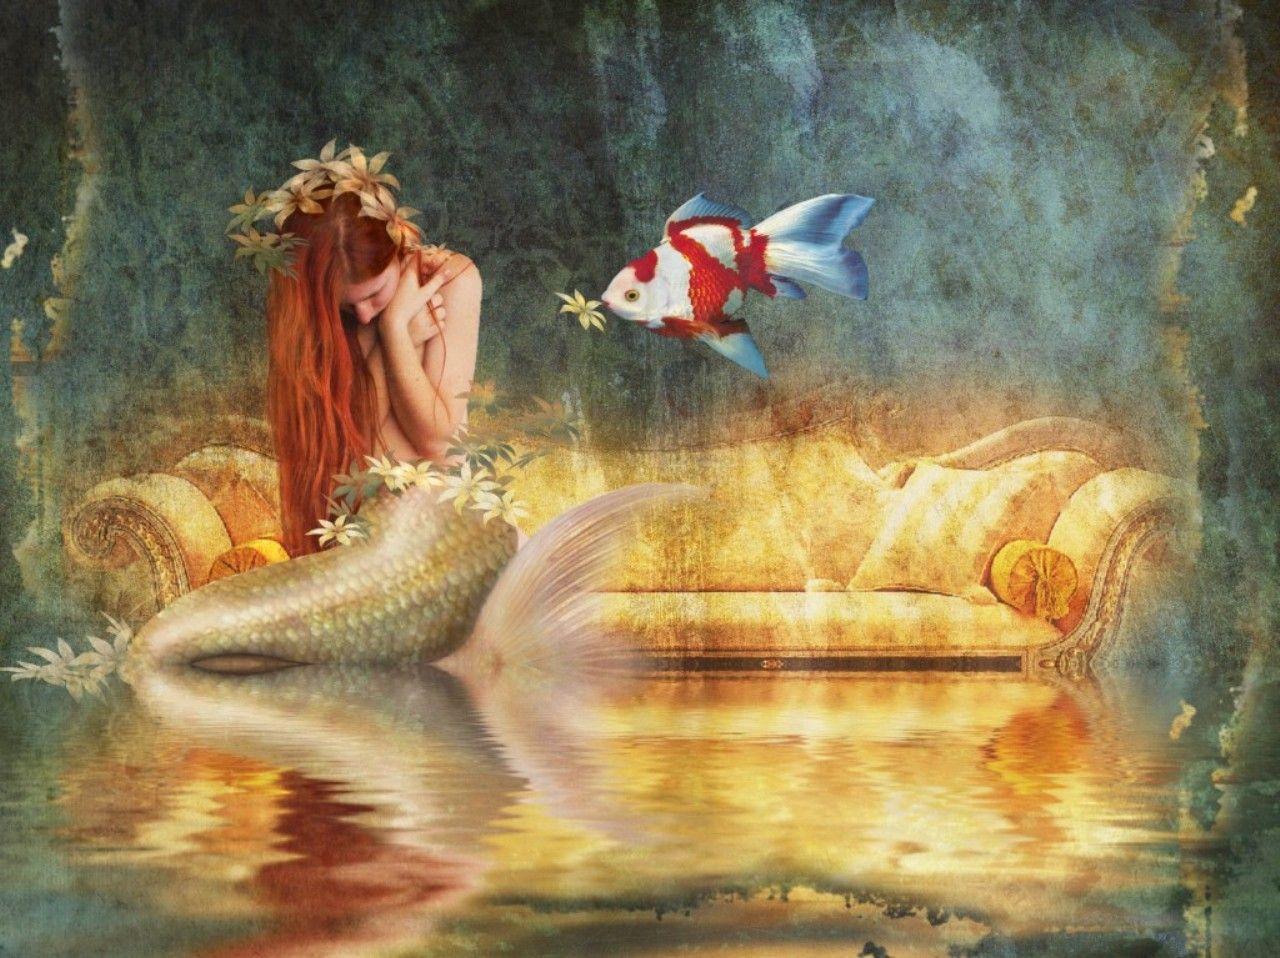 Mermaid Desktop Wallpaper. Mermaid Wallpaper For Desktop